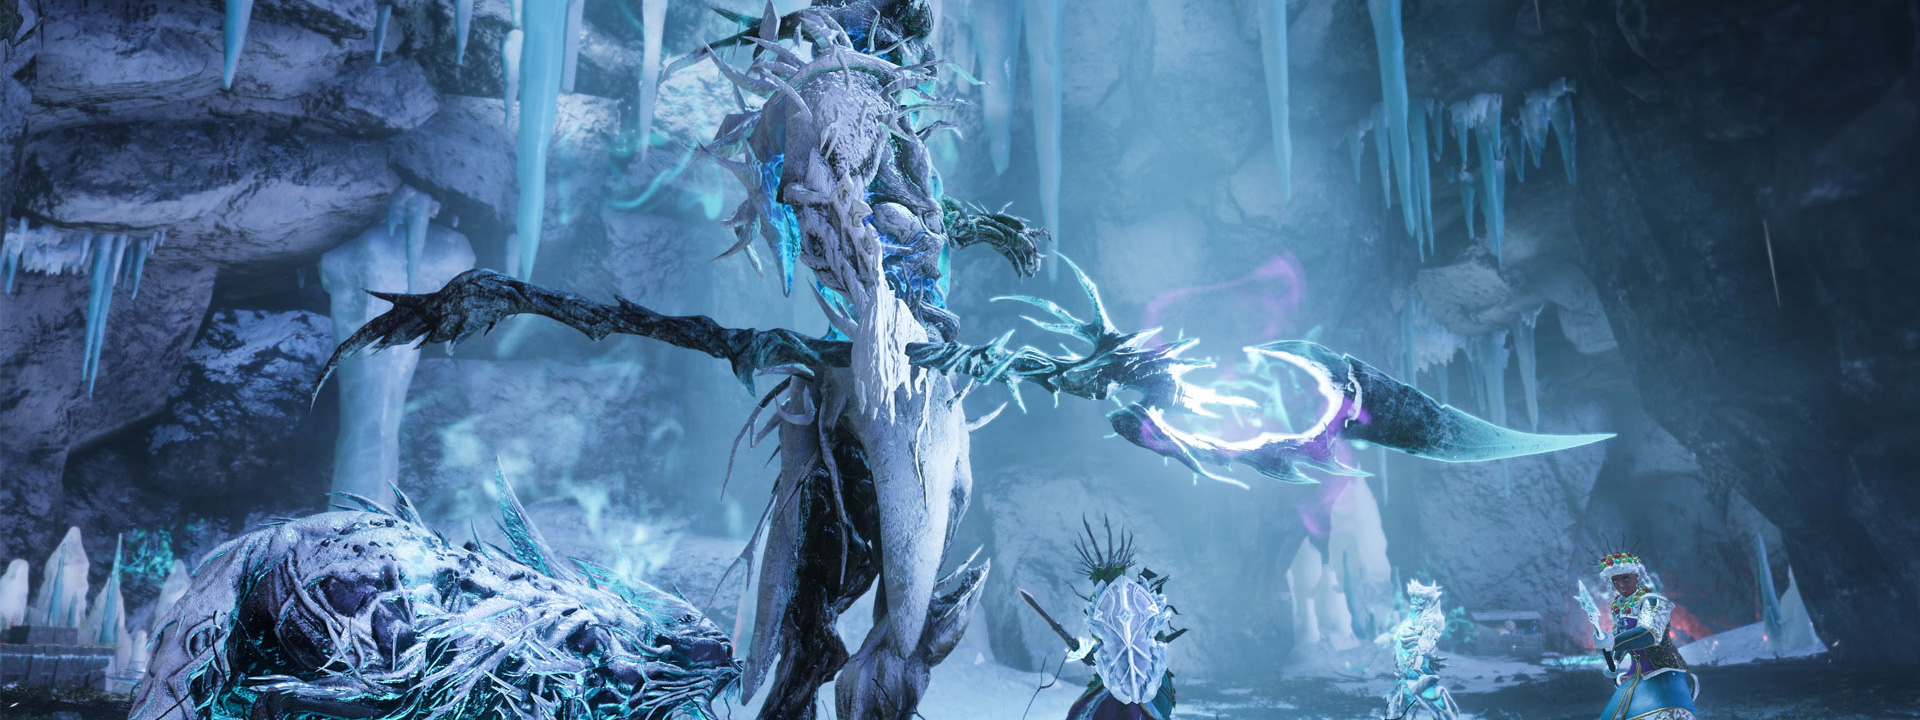 Alcuni avventurieri affrontano dei nemici invernali in una grotta di ghiaccio.